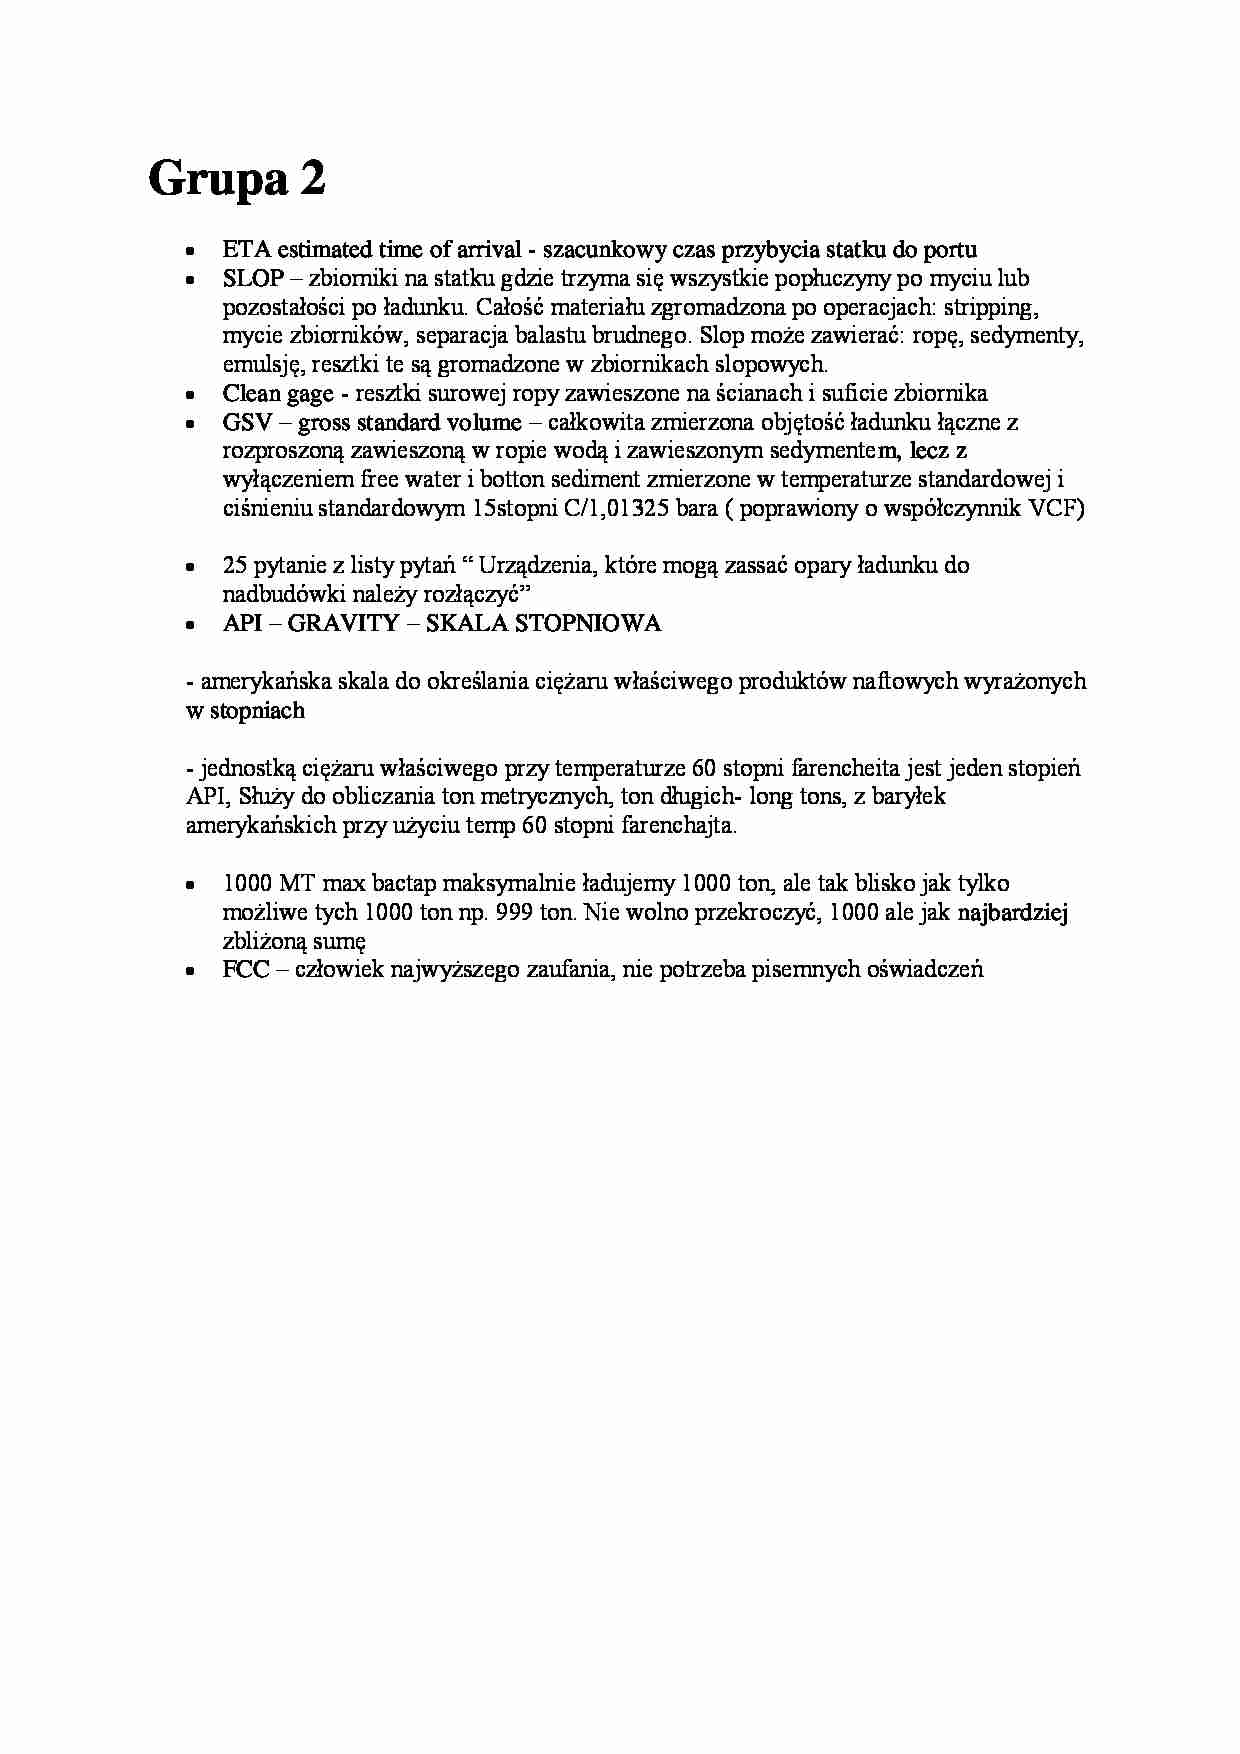 Przeładunek i składowanie - zagadnienia egzaminacyjne - ETA - strona 1